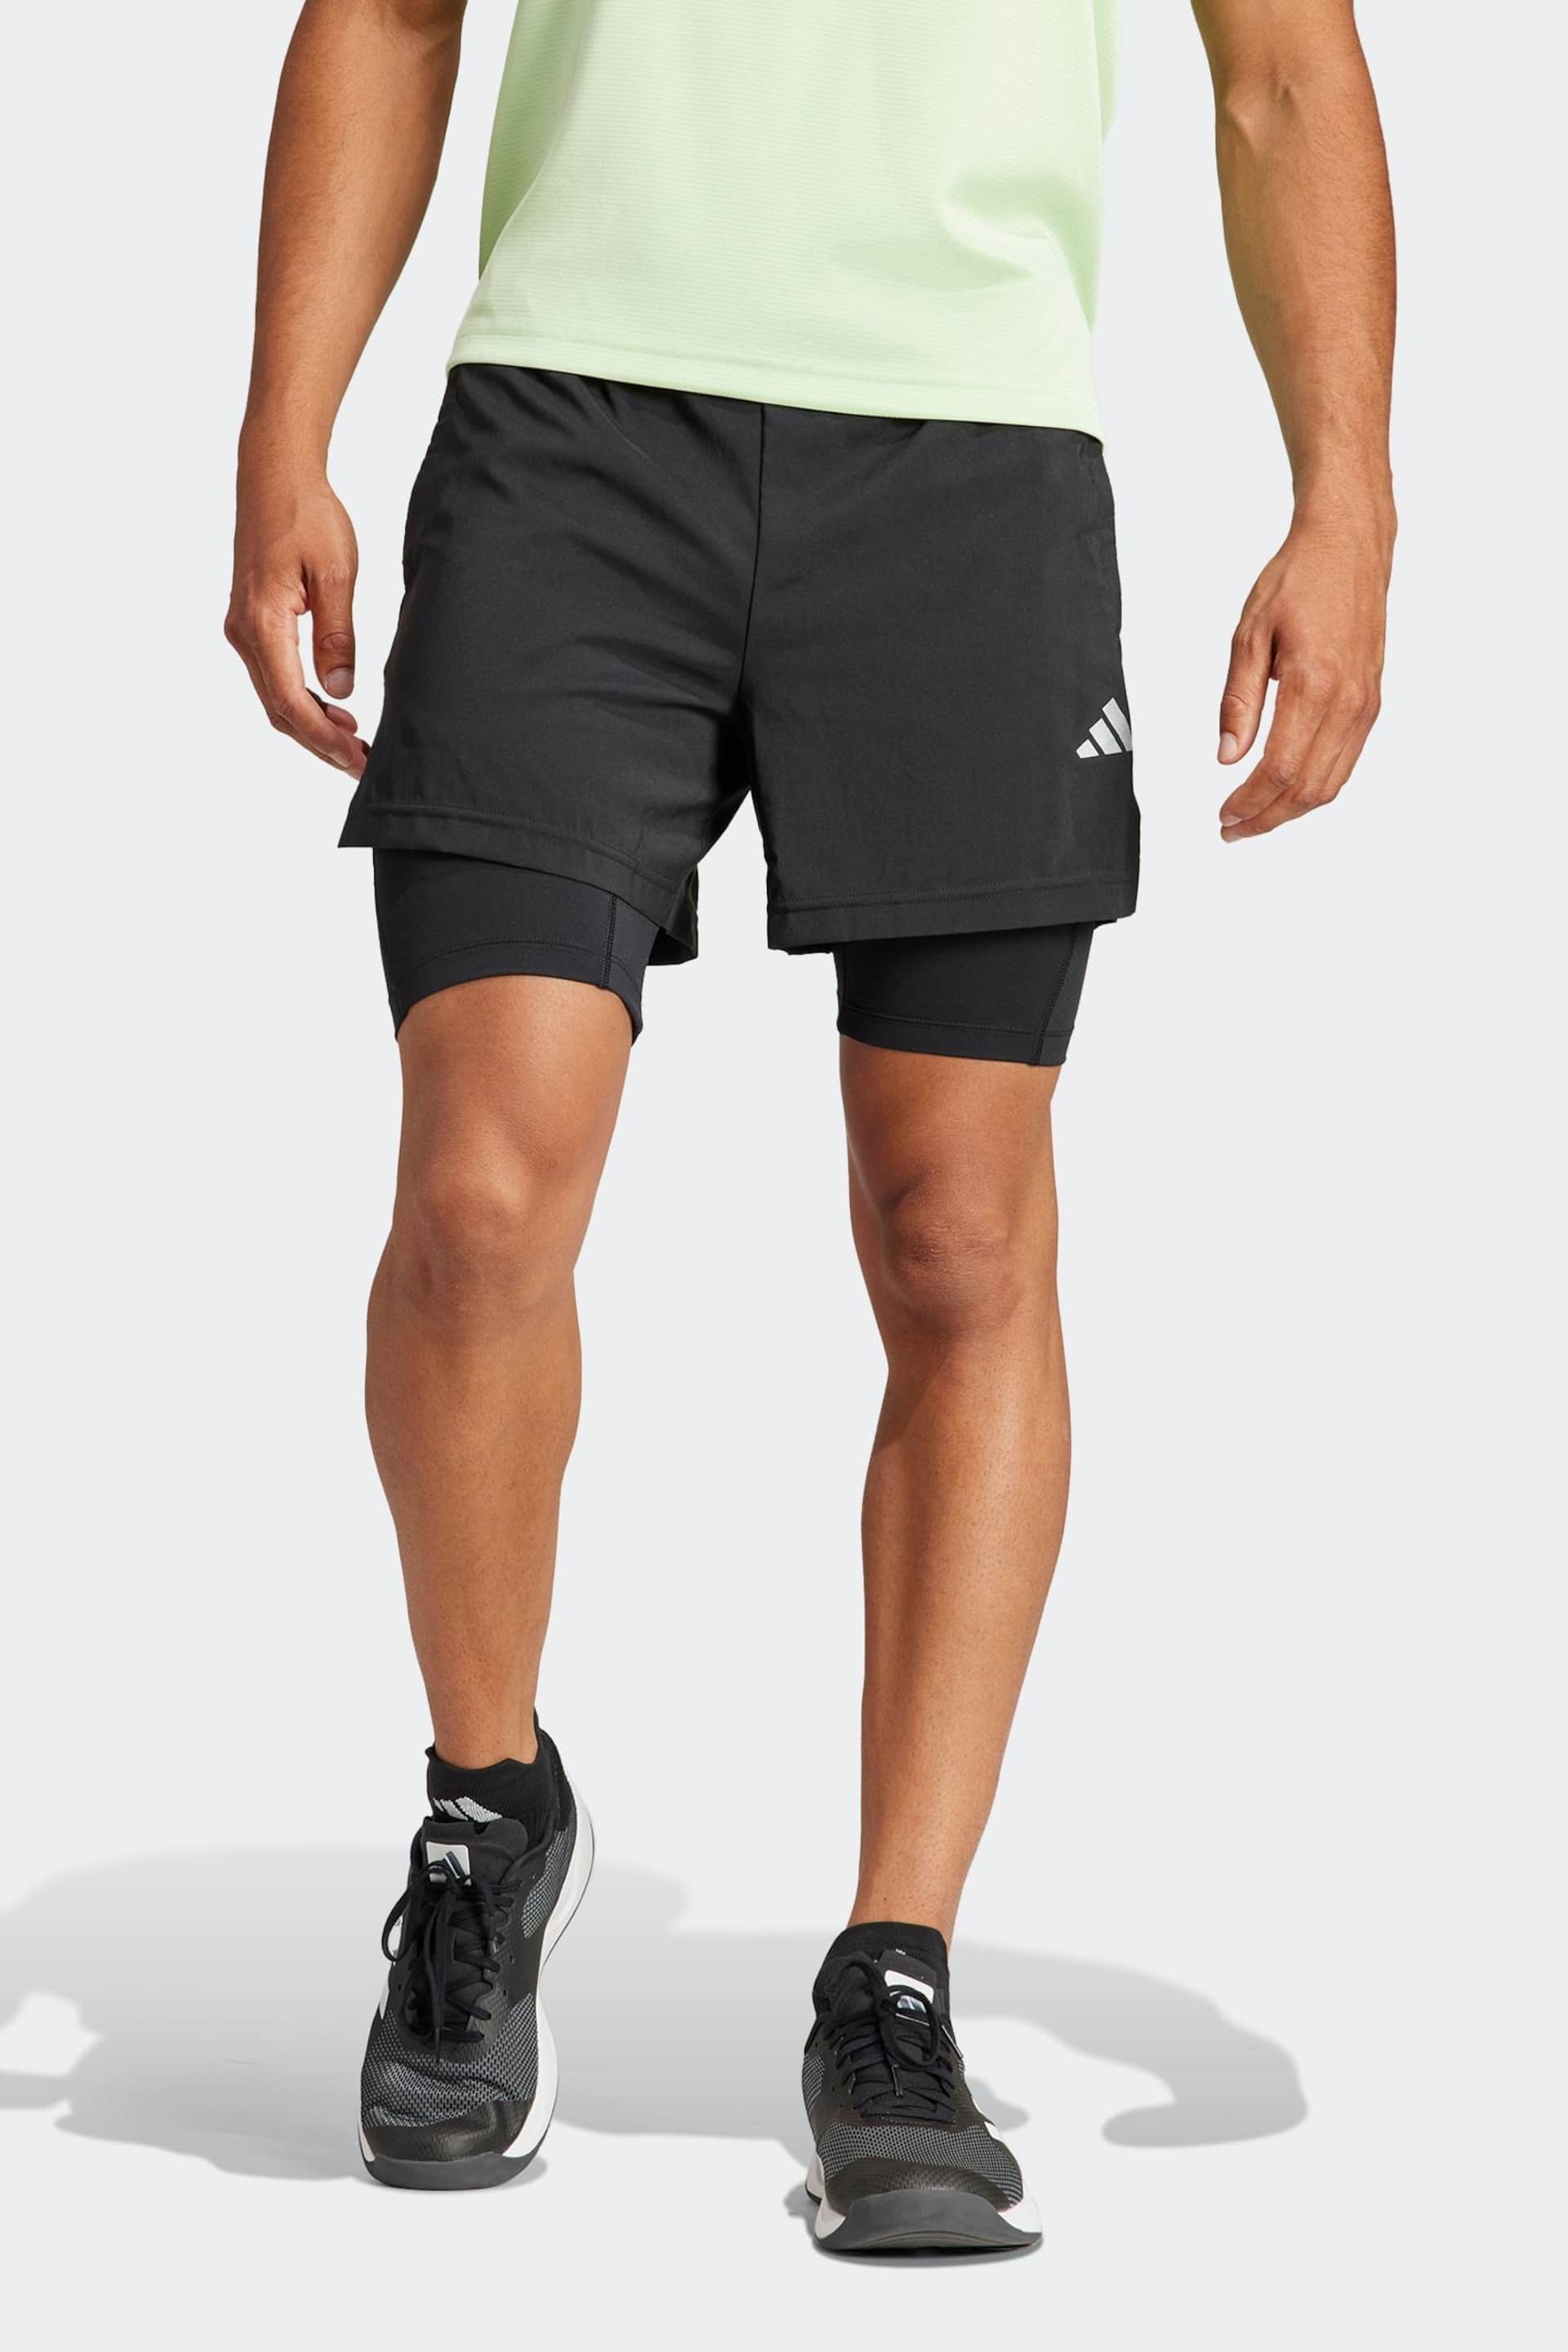 adidas Black Gym Training 2-In-1 Shorts - Image 1 of 6